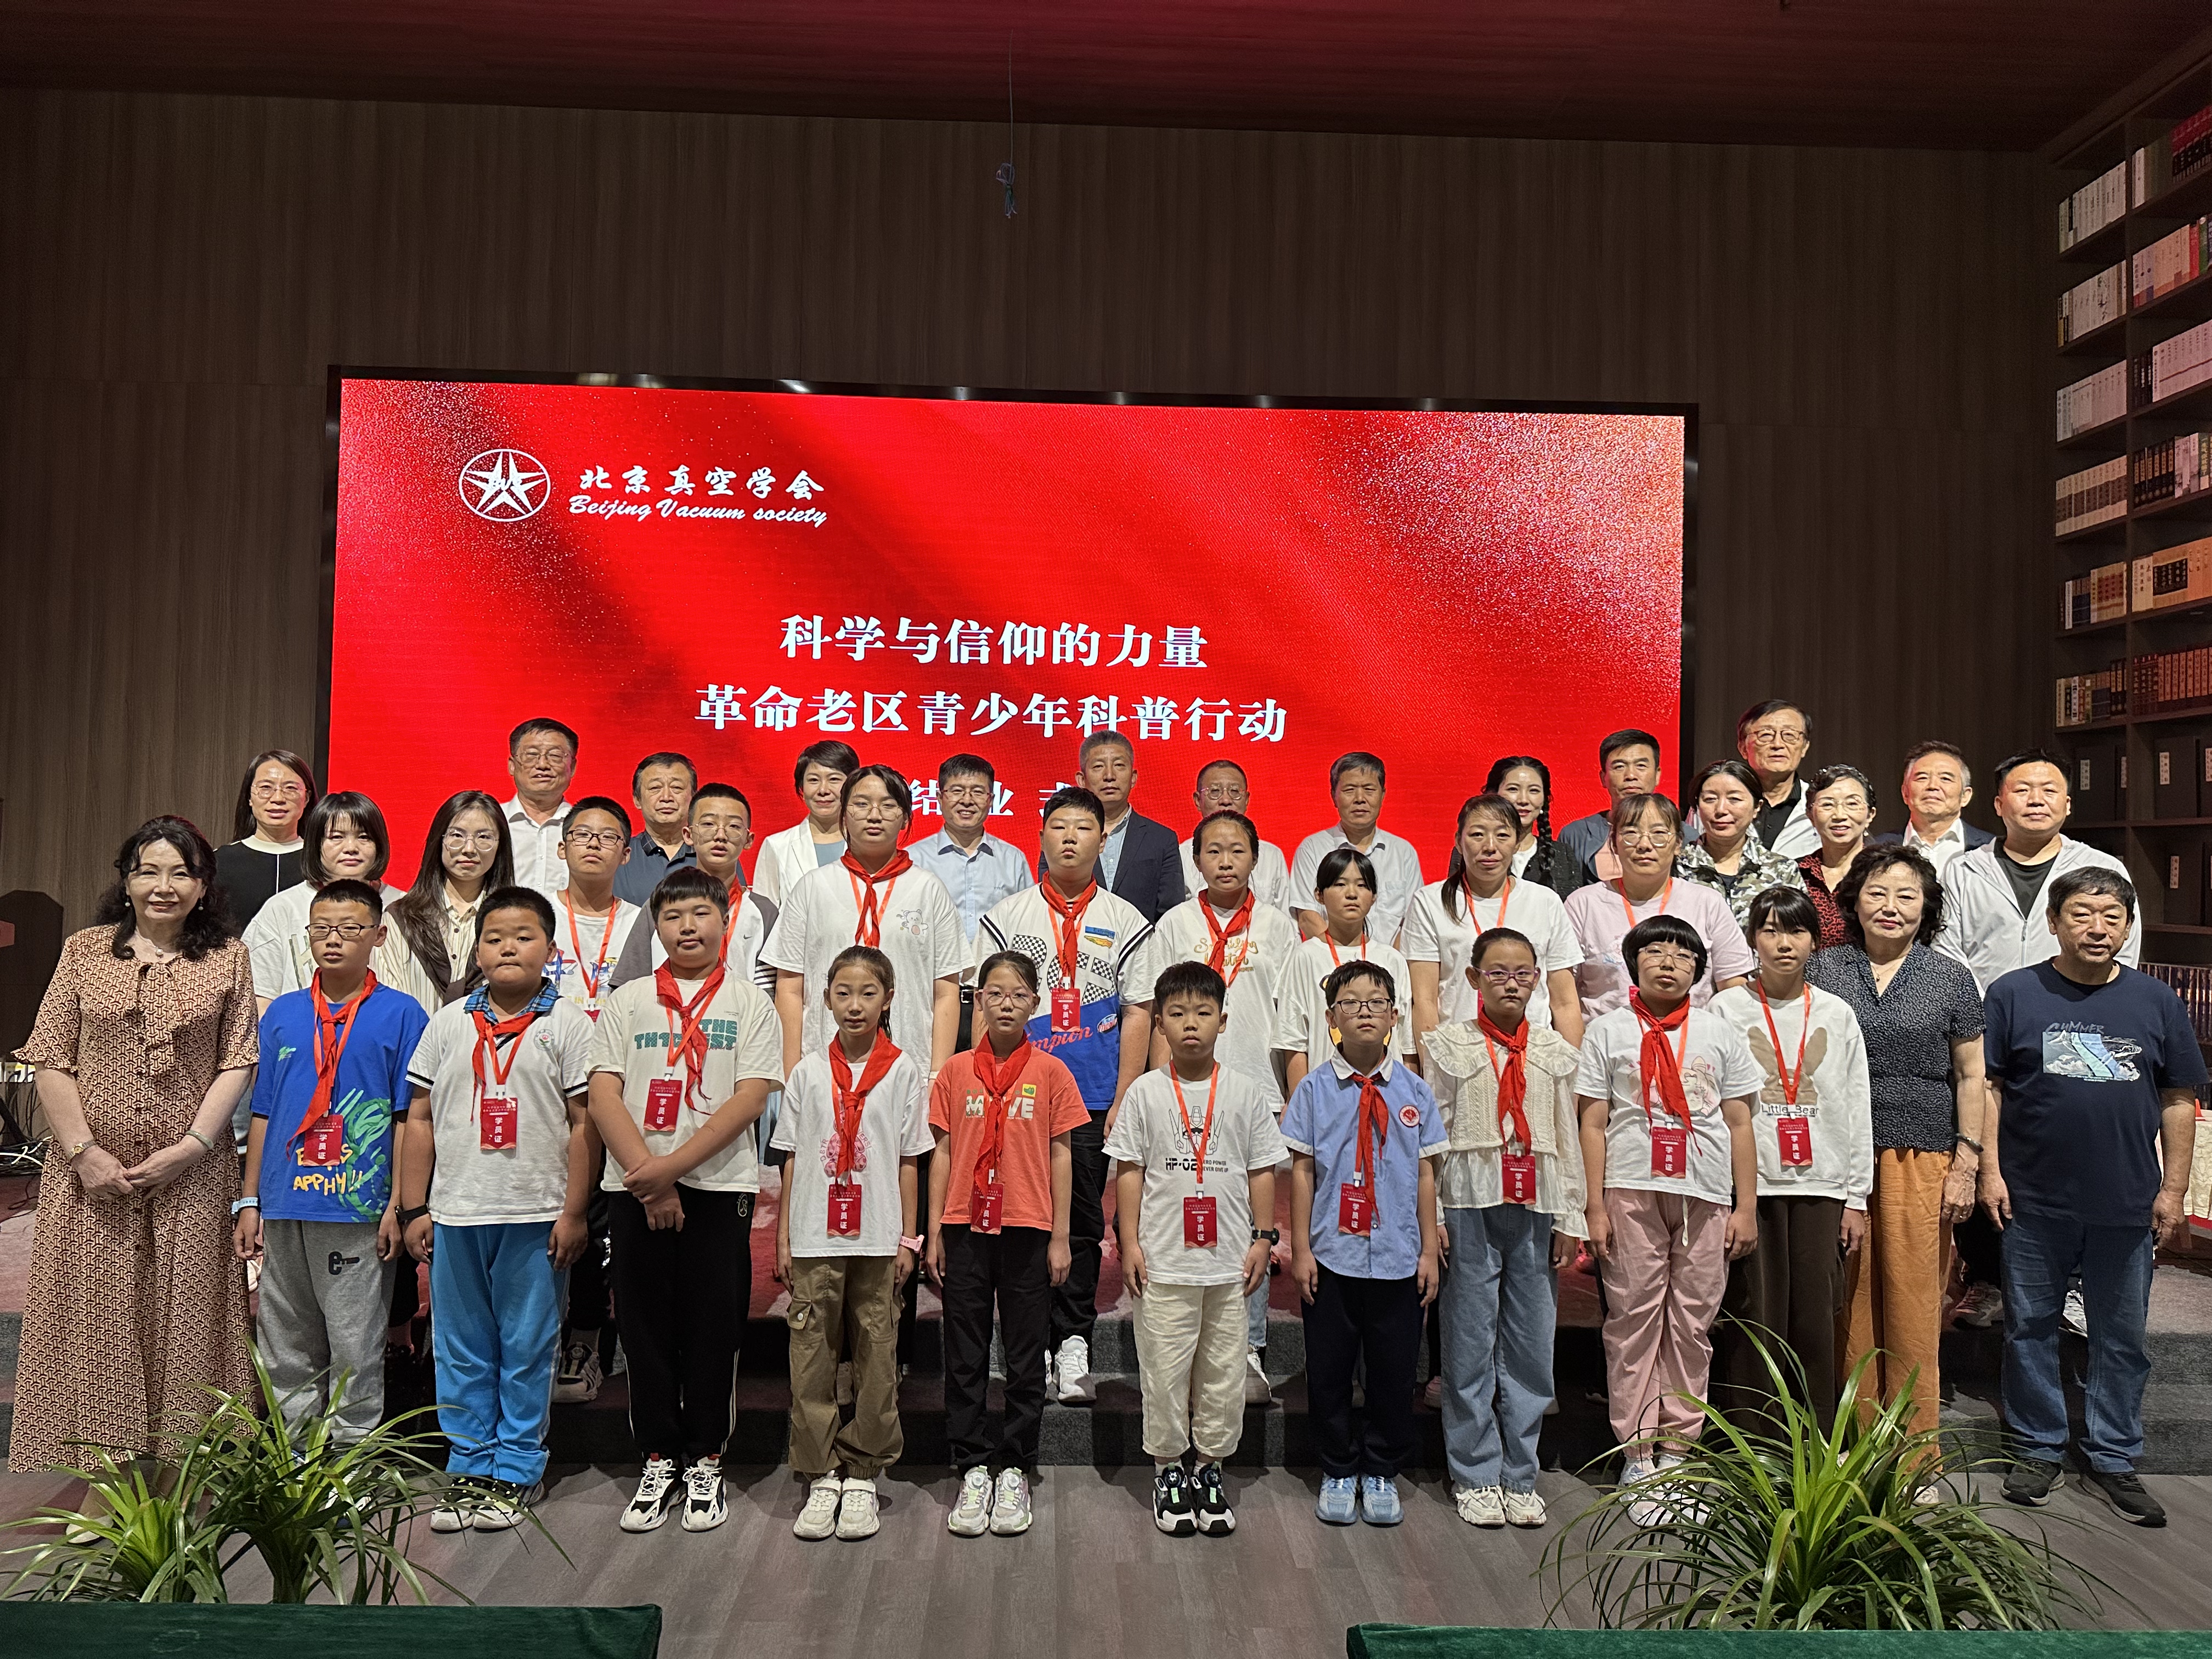 科学与信仰的力量 ——北京真空学会成功举办革命老区青少年科普活动